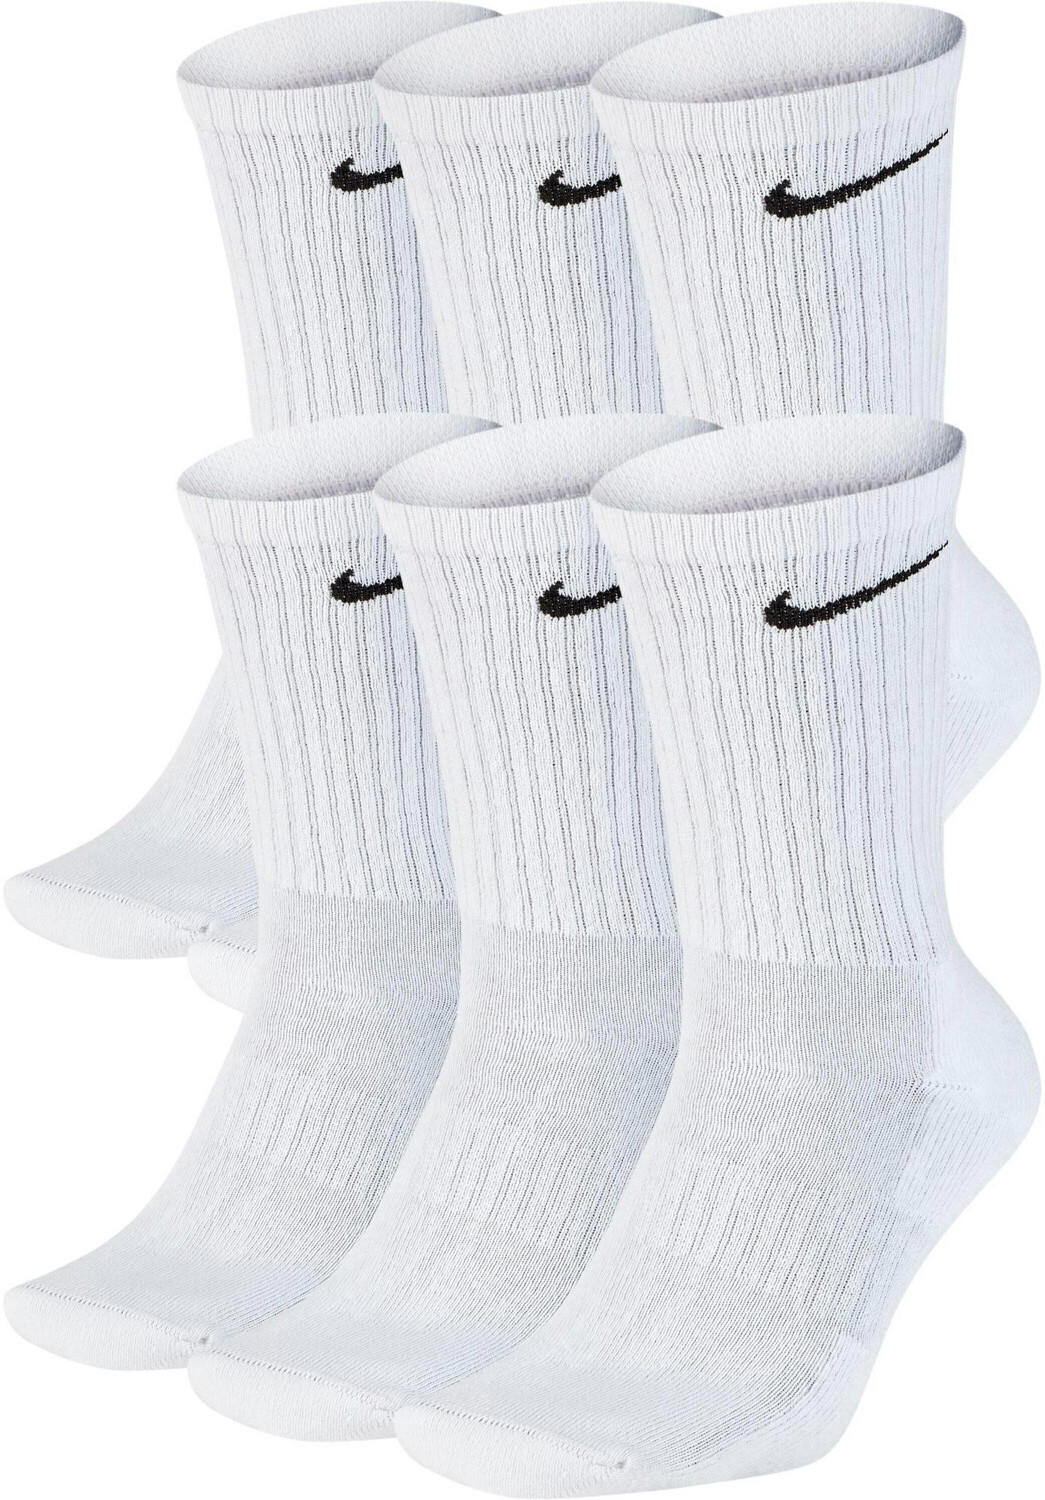 Nike 6-Pack Everyday Cushion Crew Socks (SX7667)